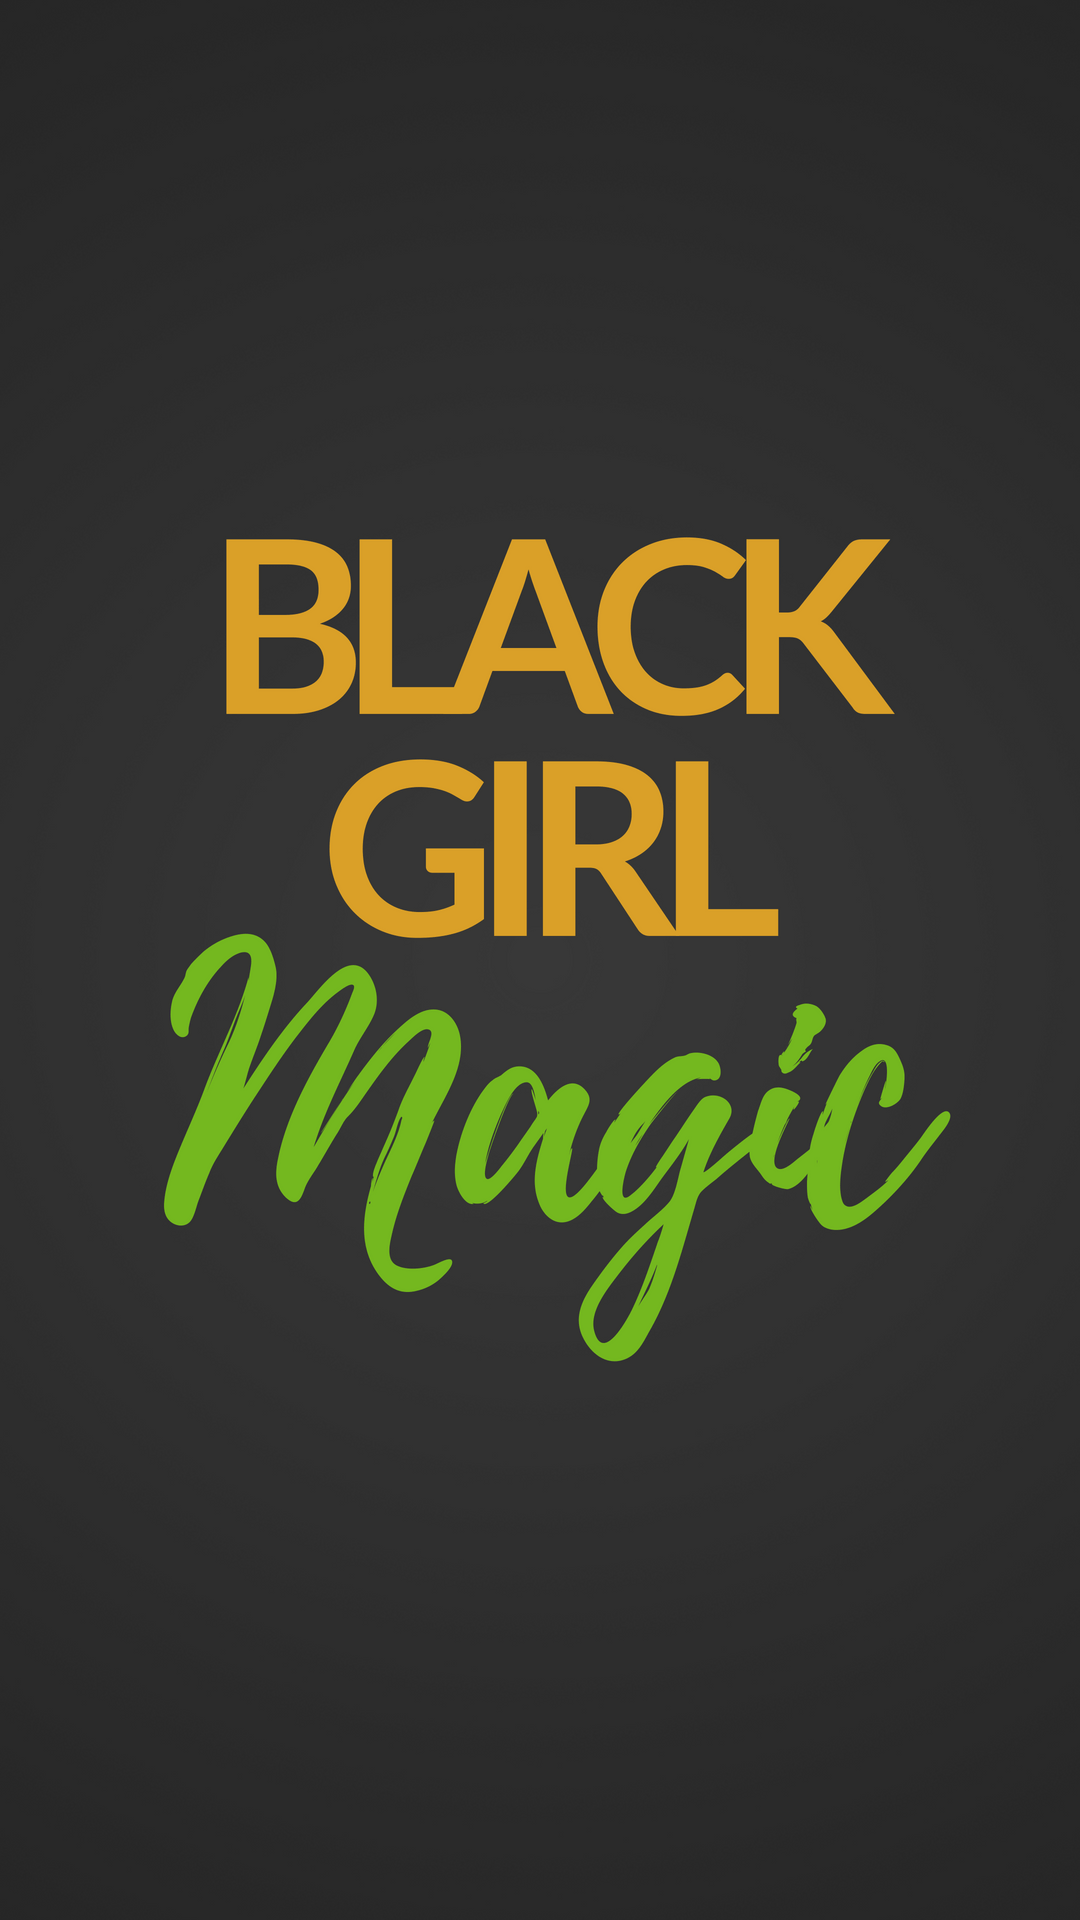 Black Magic Girl Wallpapers